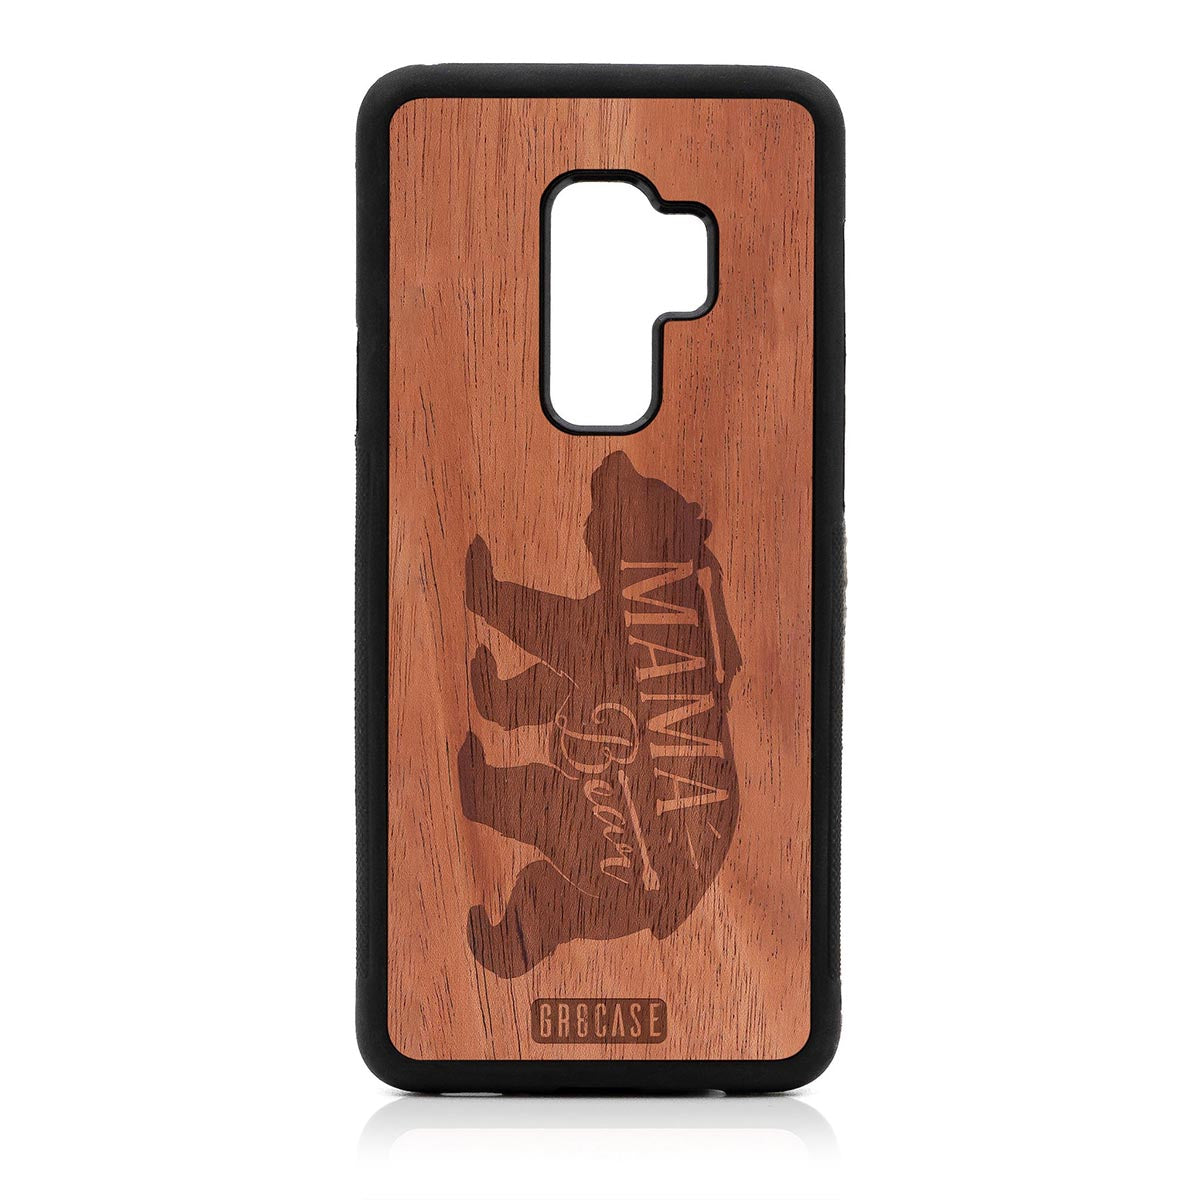 Mama Bear  Design Wood Case Samsung Galaxy S9 Plus by GR8CASE